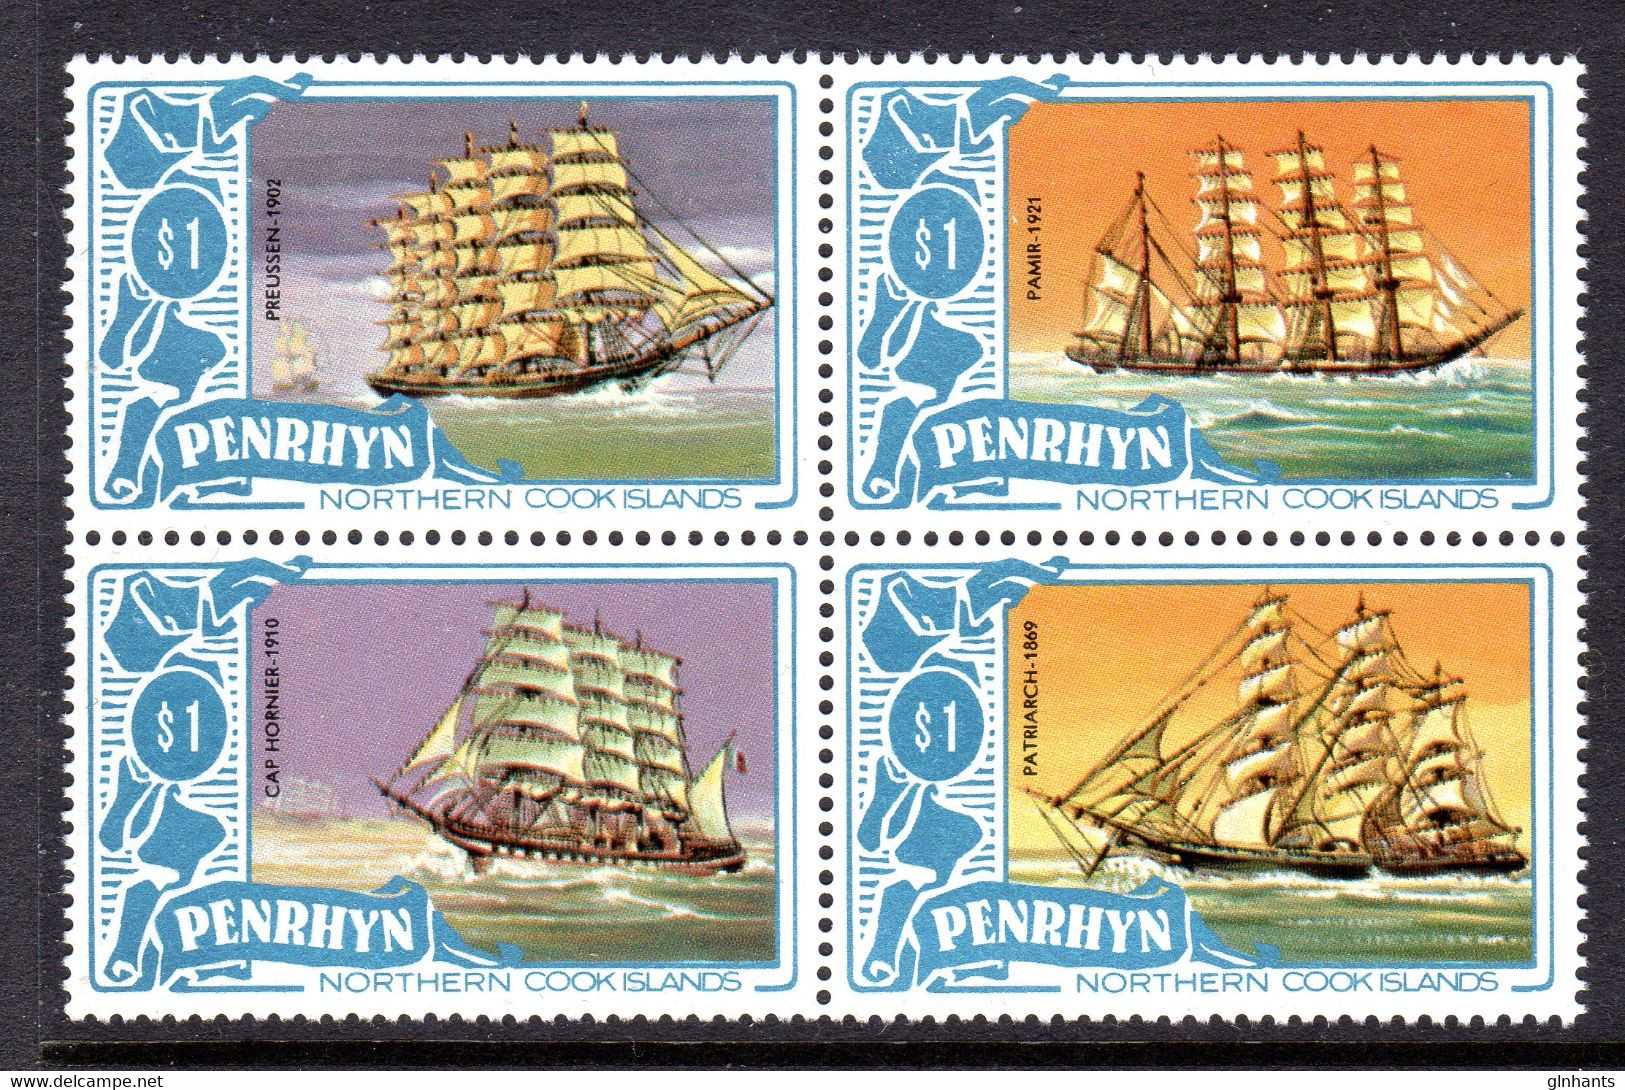 PENRHYN - 1981 SHIPS $1 VALUES (4) IN BLOCK FINE MNH ** SG 202-205 - Penrhyn